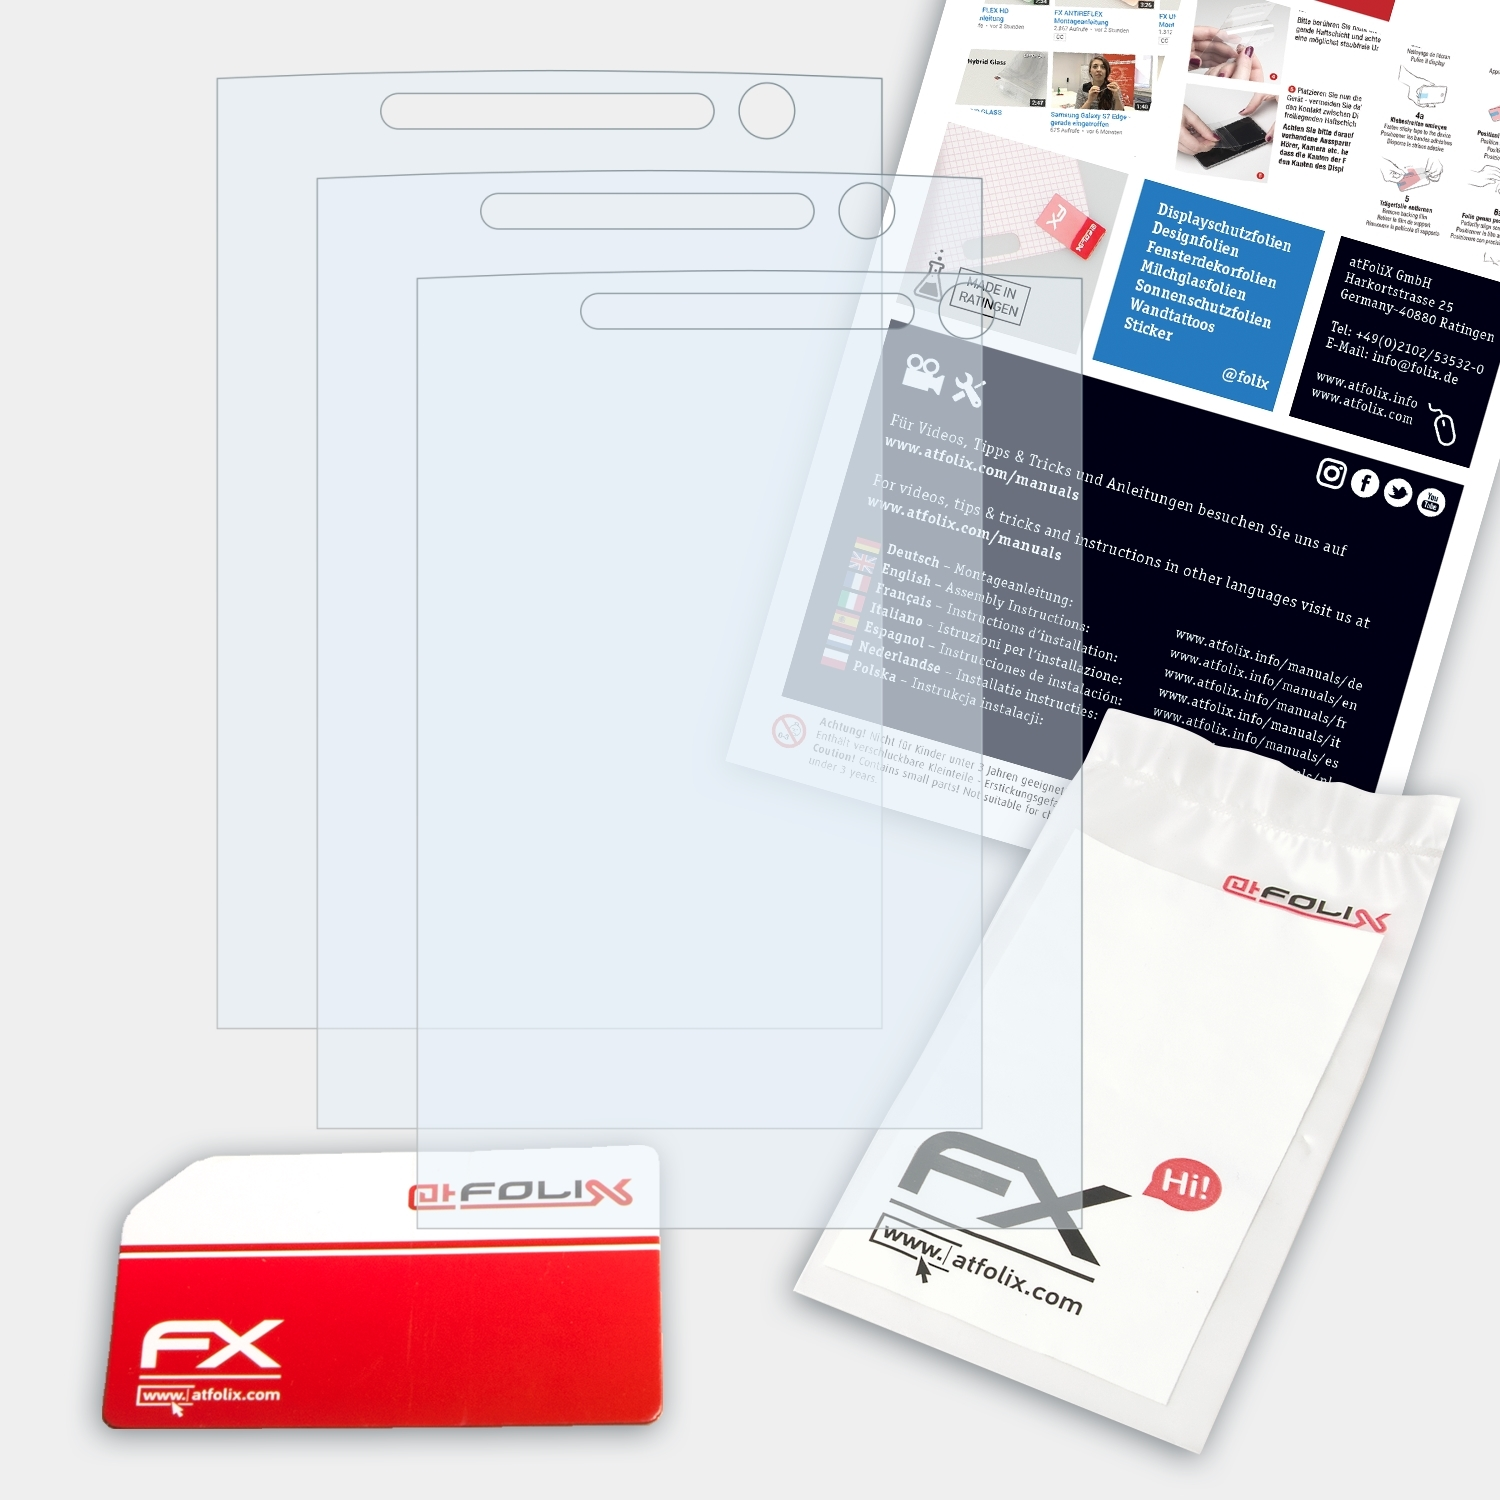 ATFOLIX 3x FX-Clear Displayschutz(für Sony-Ericsson C702)